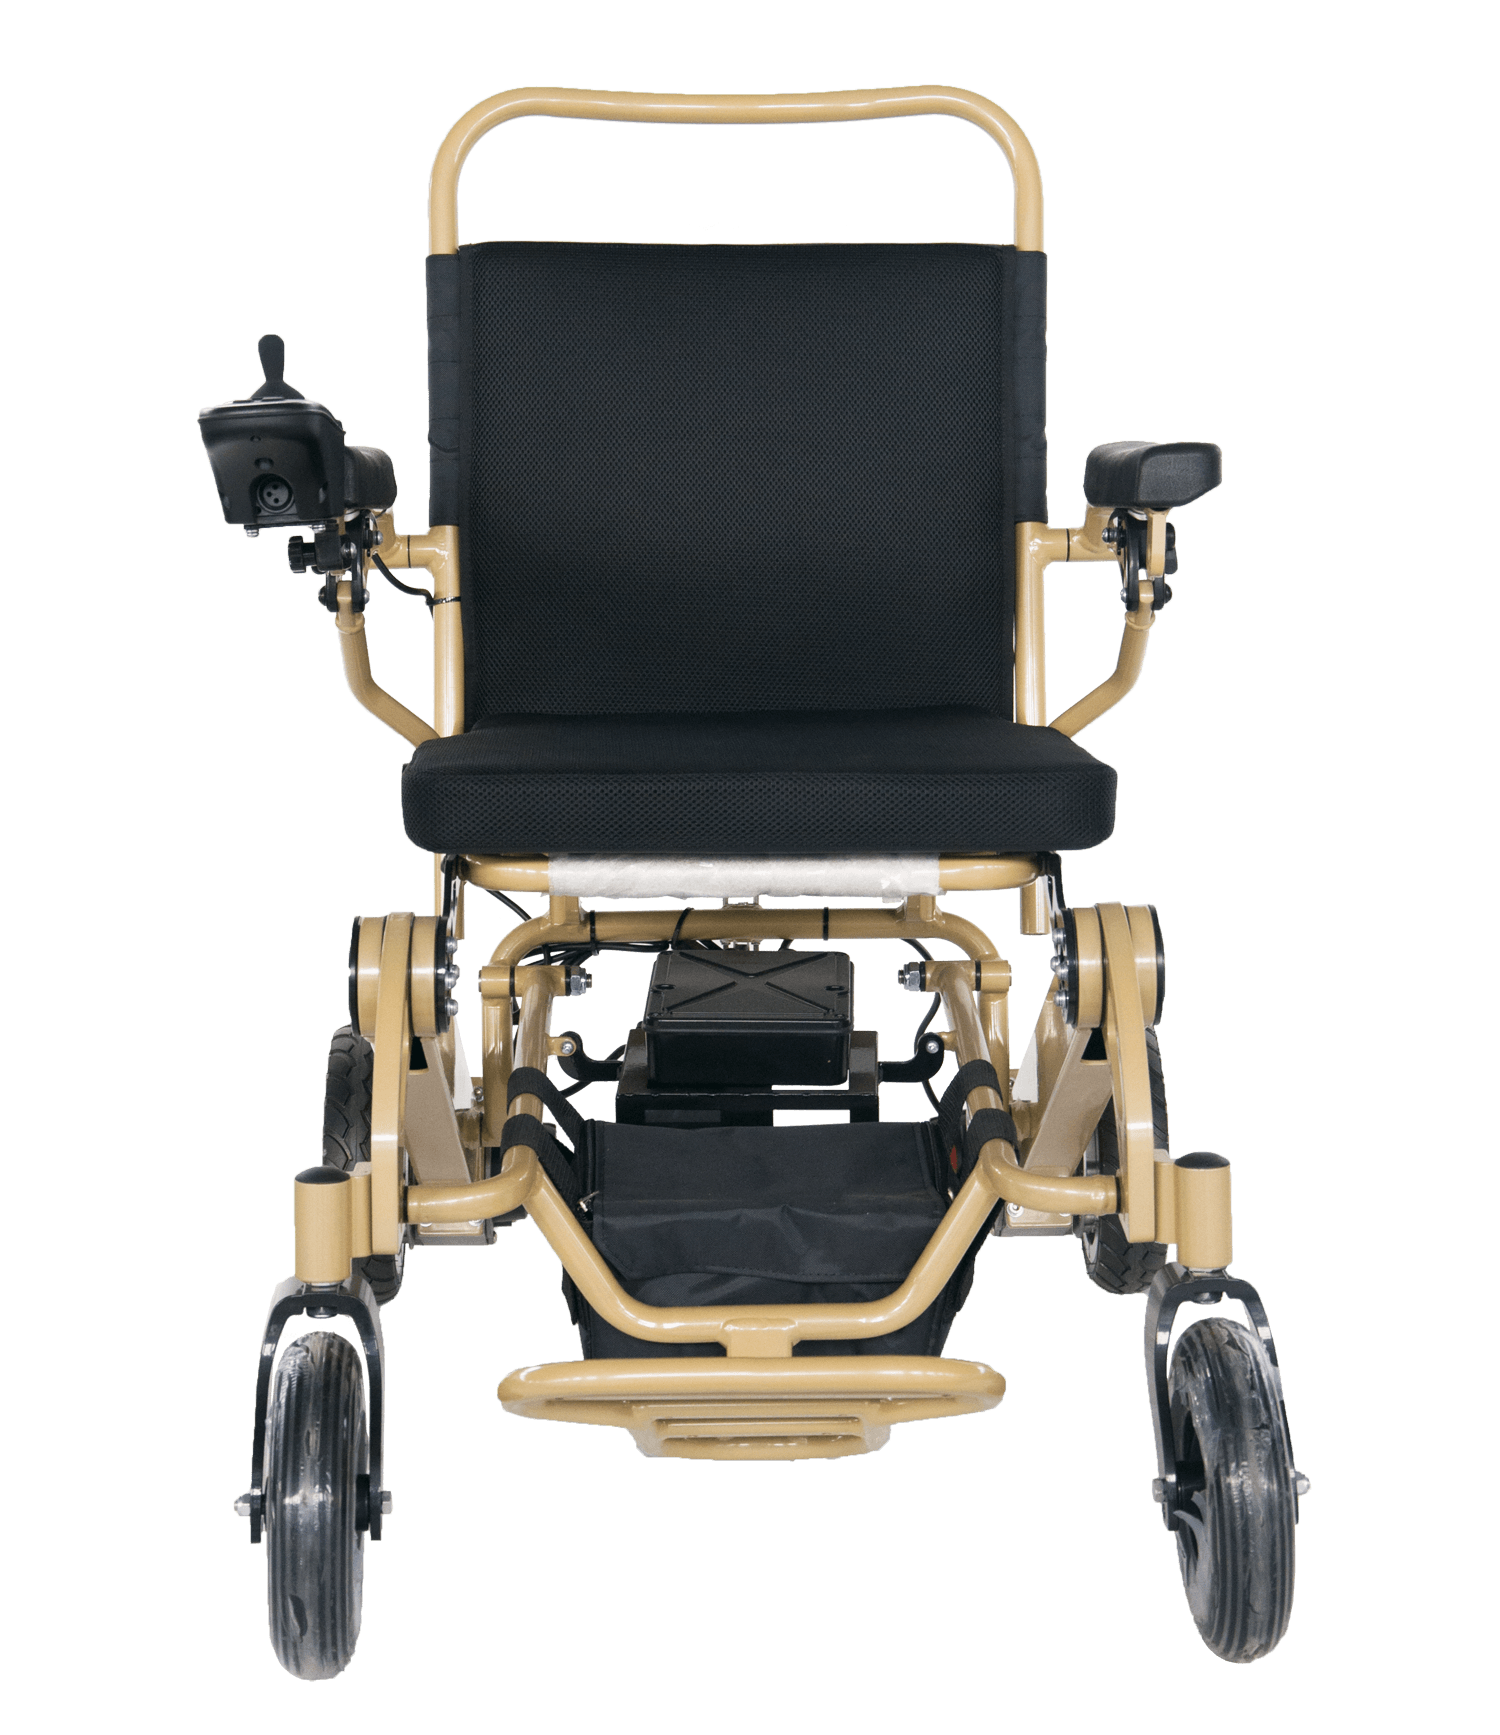 ¿Cuáles son los tipos comunes de sillas de ruedas y las diferencias entre ellas?